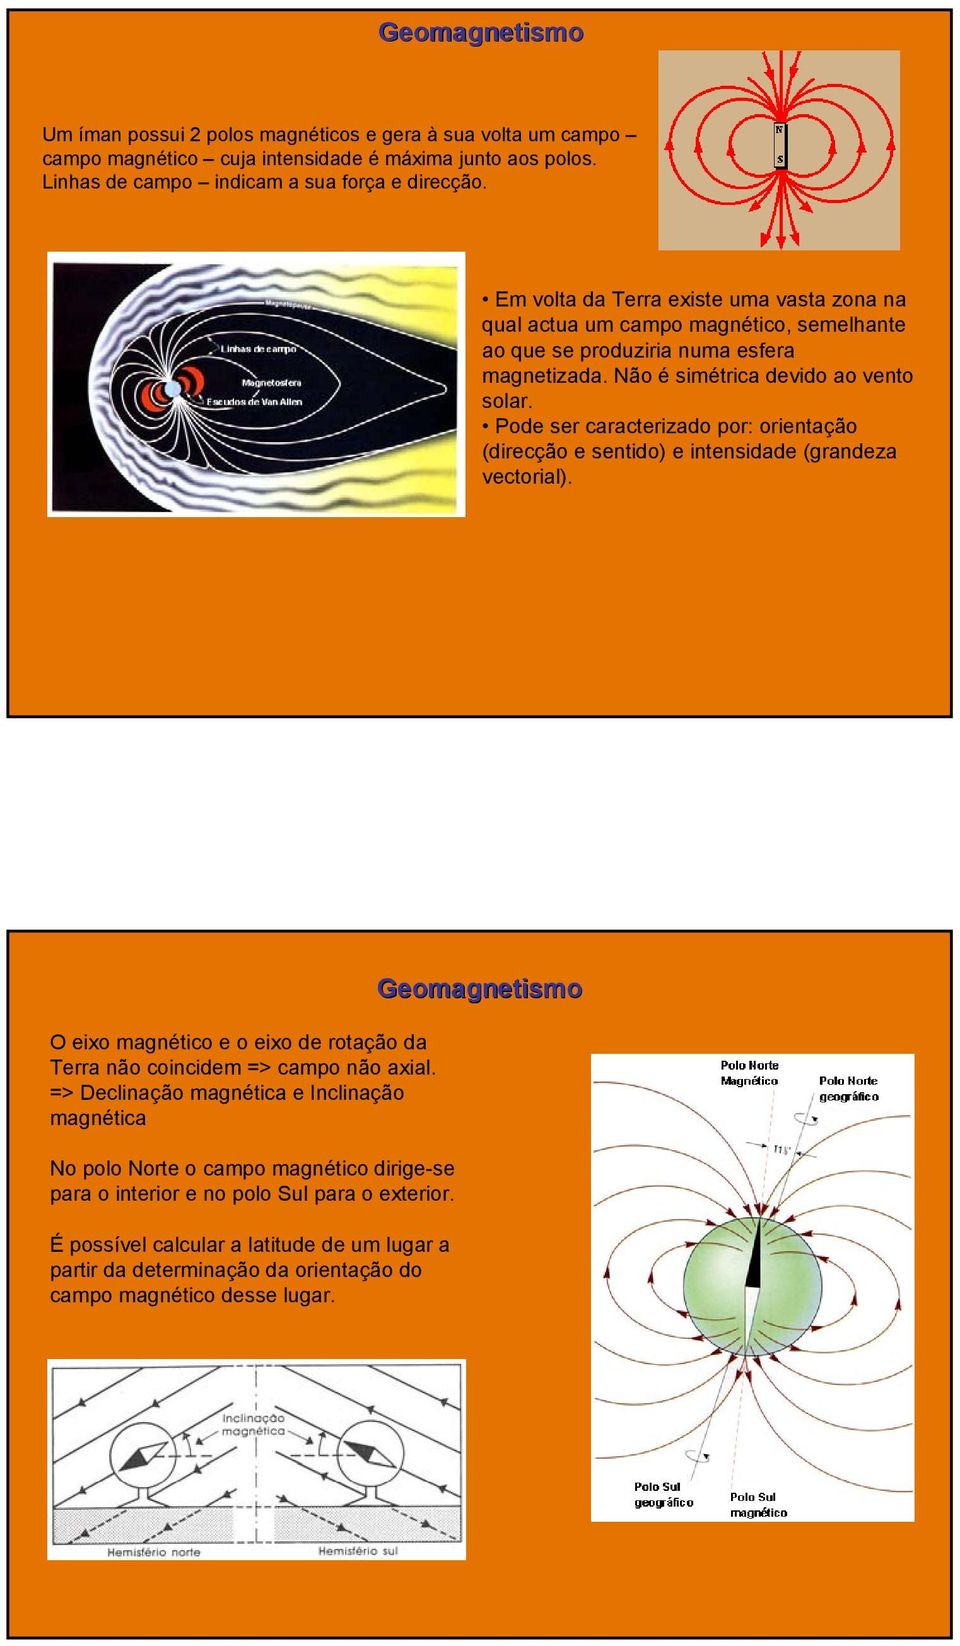 Pode ser caracterizado por: orientação (direcção e sentido) e intensidade (grandeza vectorial). O eixo magnético e o eixo de rotação da Terra não coincidem => campo não axial.